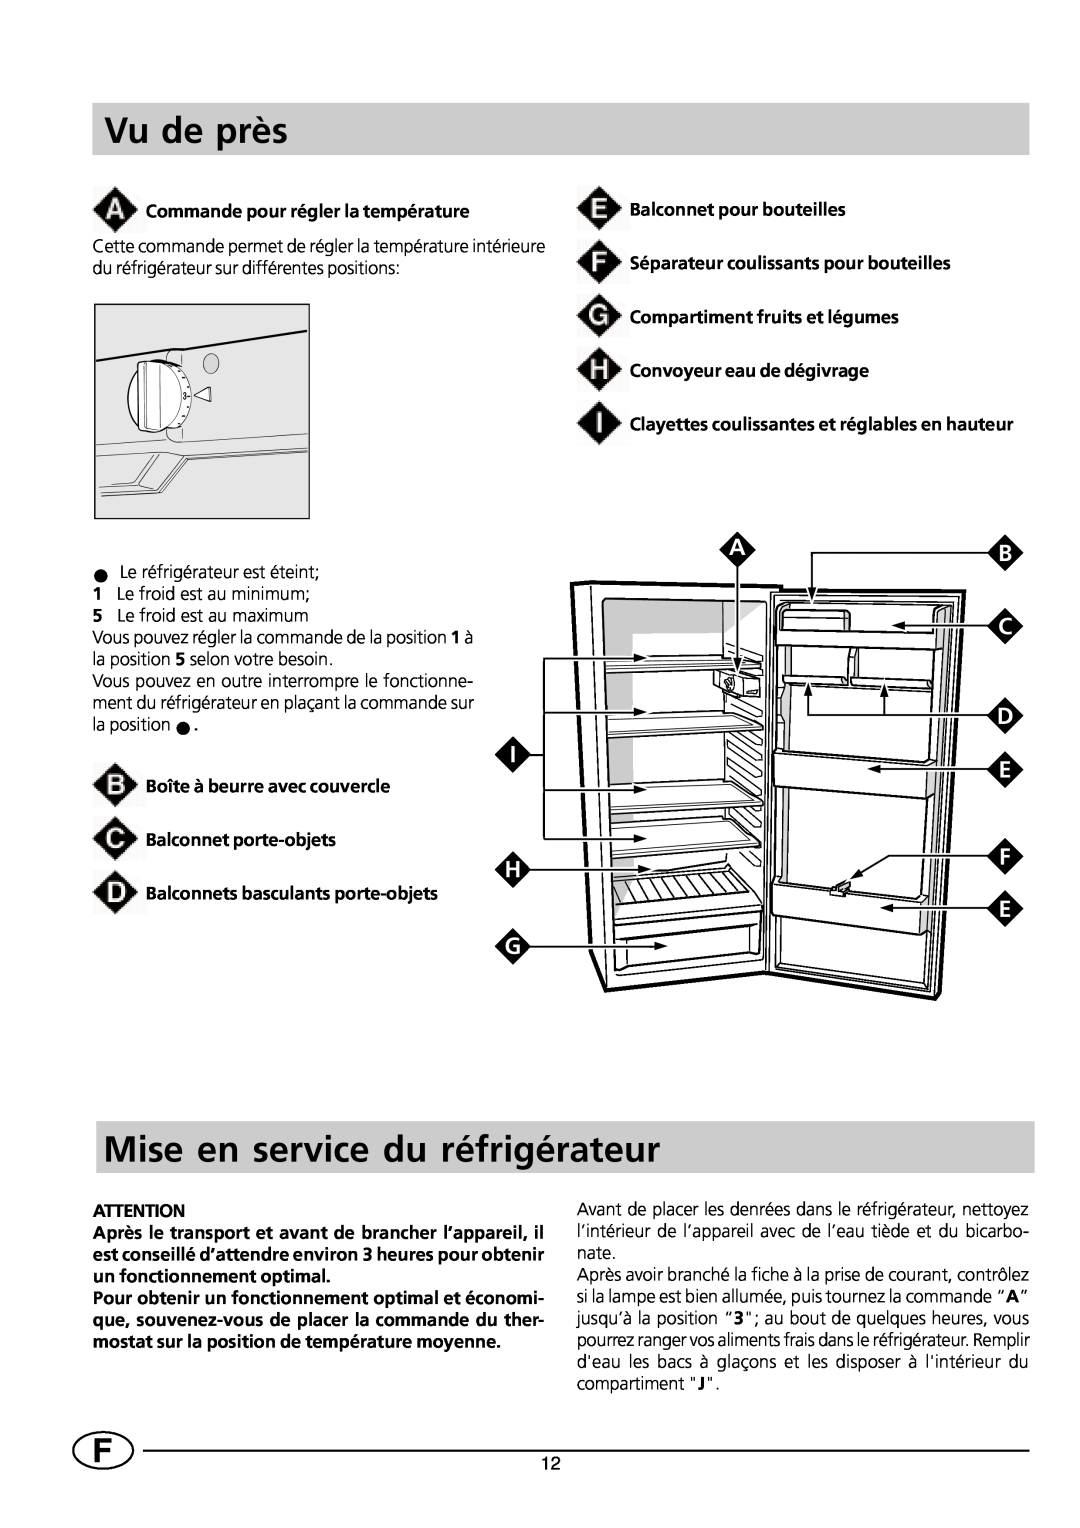 Smeg FR228SE/1 manual Vu de près, Mise en service du réfrigérateur, Commande pour régler la température, Ab C D 